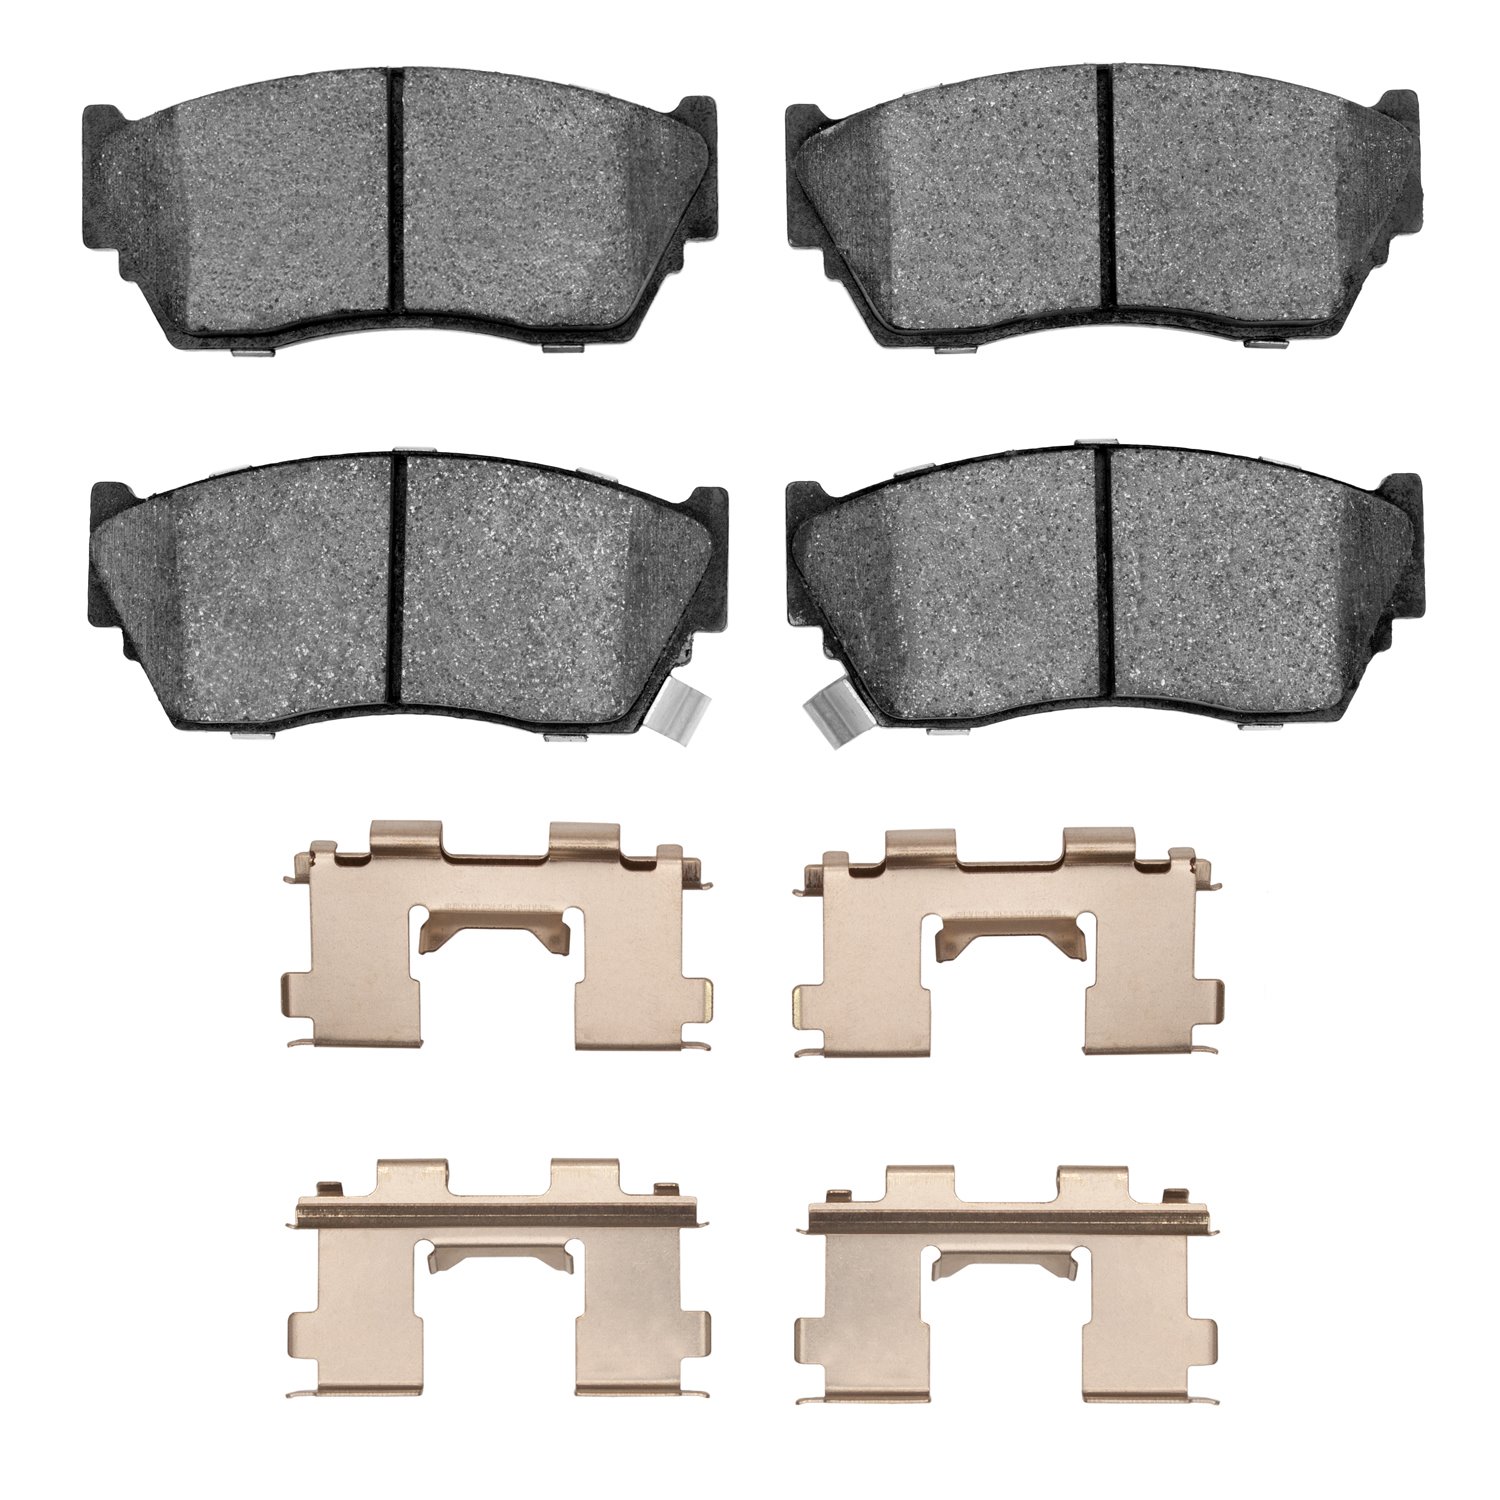 1310-0510-01 3000-Series Ceramic Brake Pads & Hardware Kit, 1991-2017 Infiniti/Nissan, Position: Front